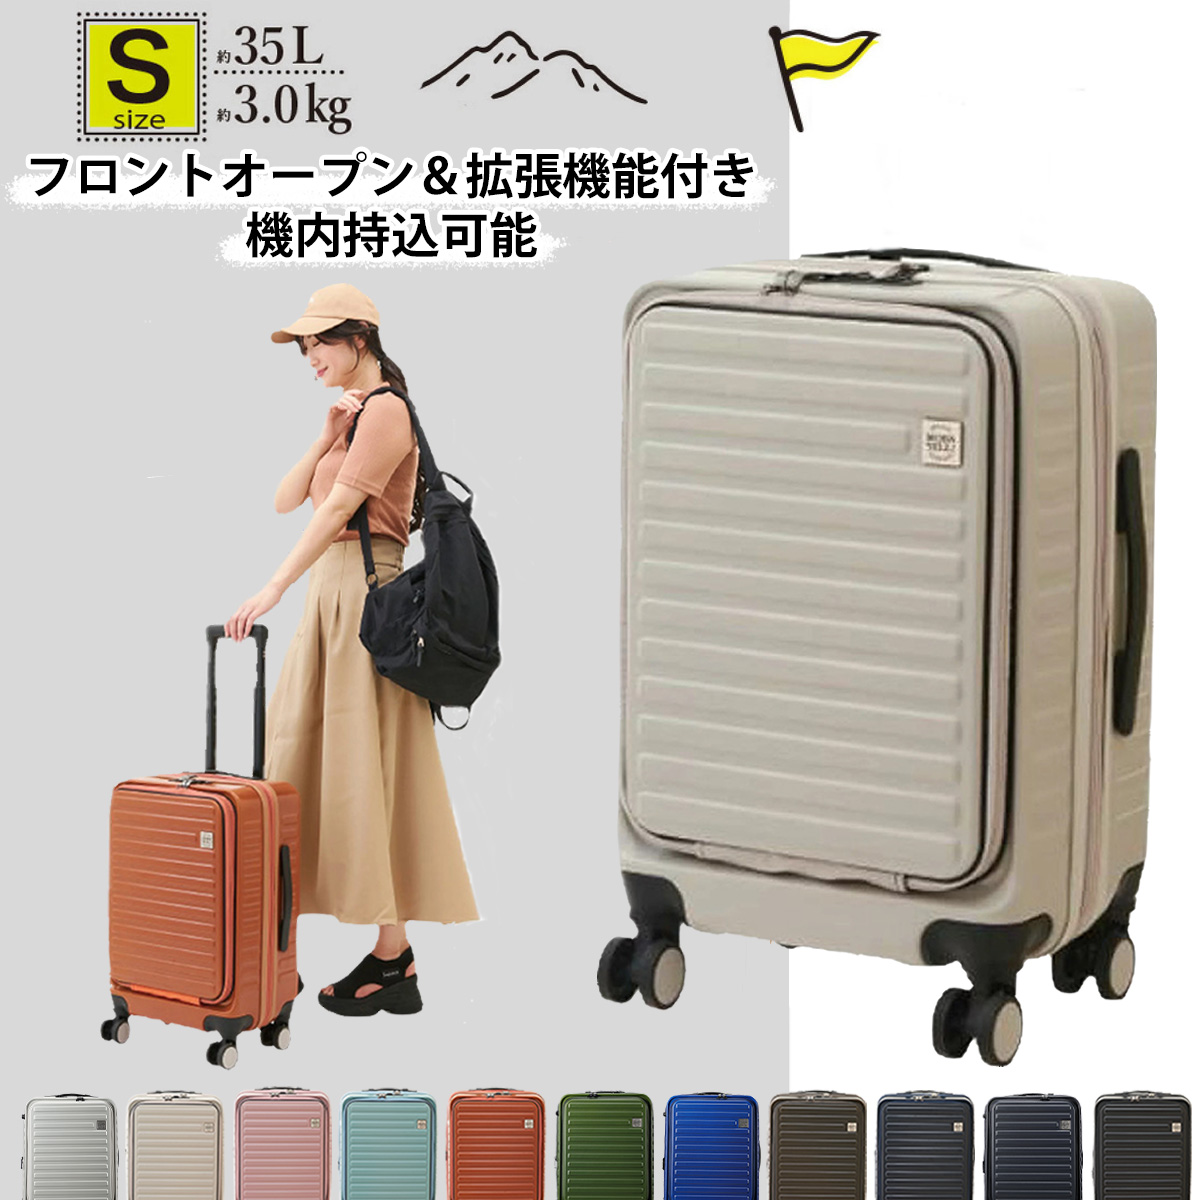 スーツケース キャリーケース Sサイズ 1泊〜3泊 35L 縦型 くすみ タイヤロック サスペンション 海外 国内 旅行 かわいい 女子旅 拡張機能  機内持ち込み可能 :mzk104:あるだけショップ 通販 